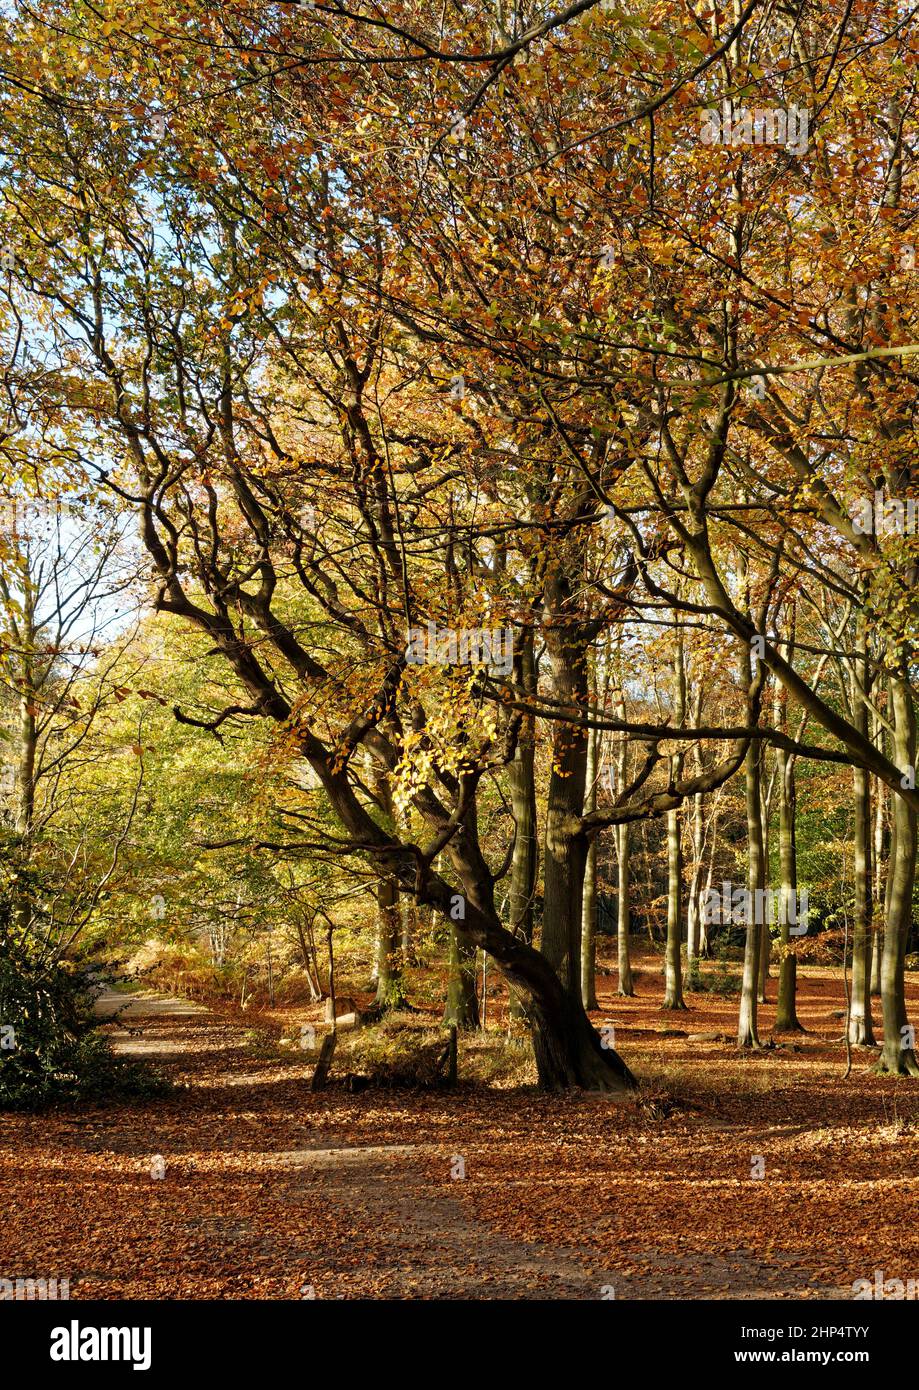 Los árboles de haya en el sol del otoño que proporcionan colores brillantes del otoño en Witton Woods (a veces llamado Bacton Woods) cerca de North Walsham, Norfolk. Foto de stock